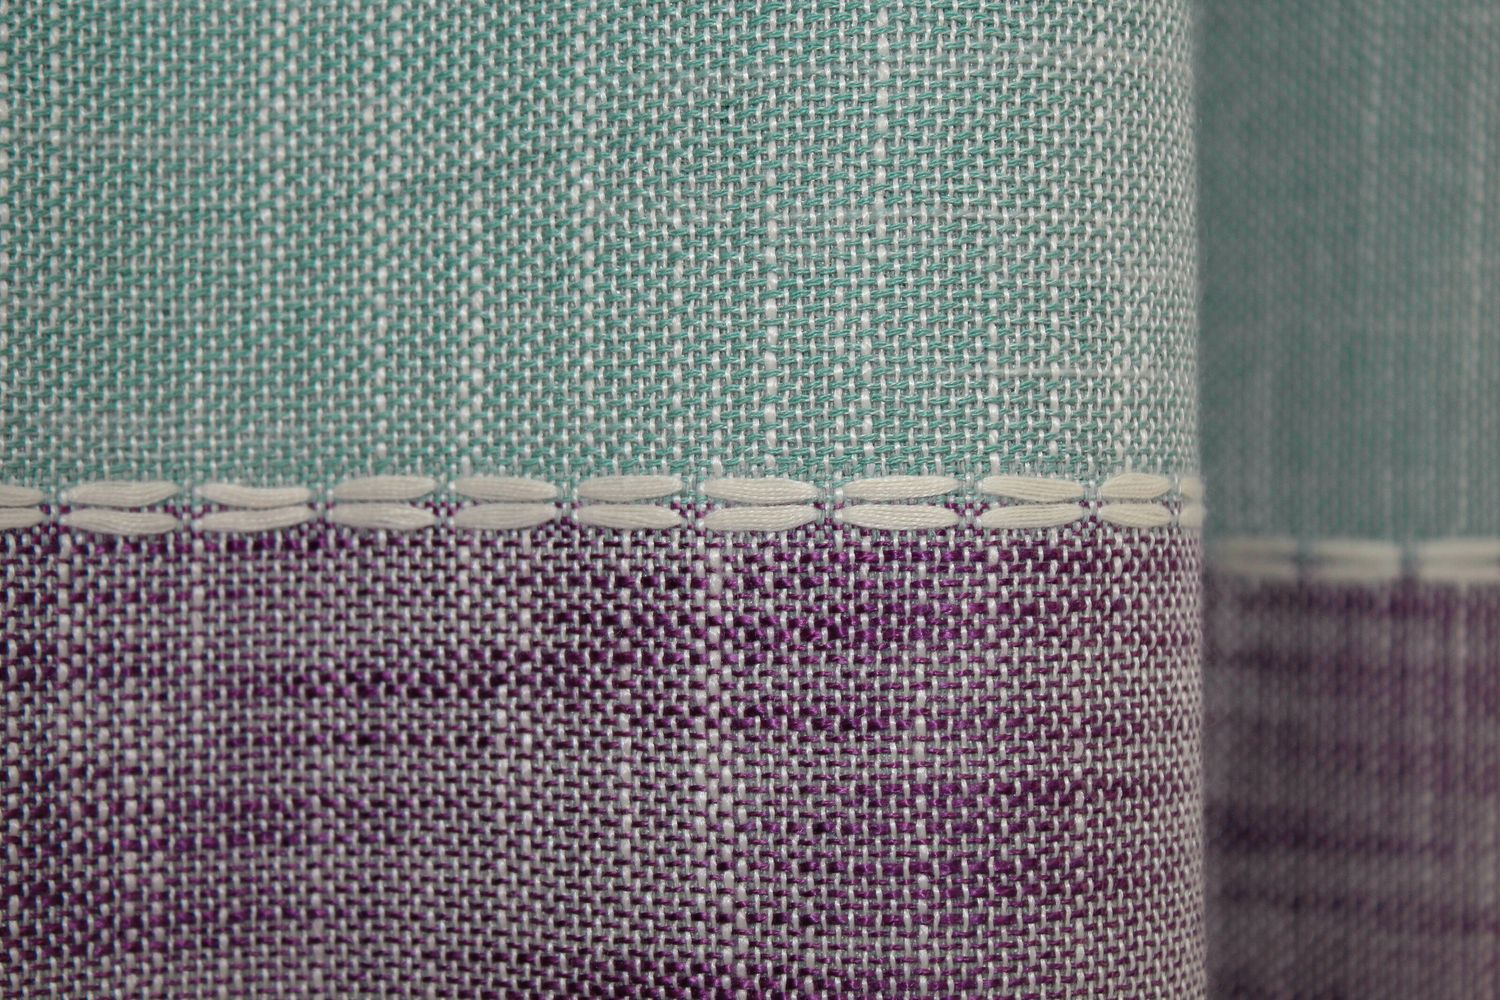 Шторы из ткани лён цвет серо-голубой с розовым 1109ш, Серо-голубой с розовым, Комплект штор (2шт. 1,0х2,7м.), Классические, Без ламбрекена, Длинные, 1 м., 2,7 м., 100, 270, 1 - 2 м., В комплекте 2 шт., Тесьма